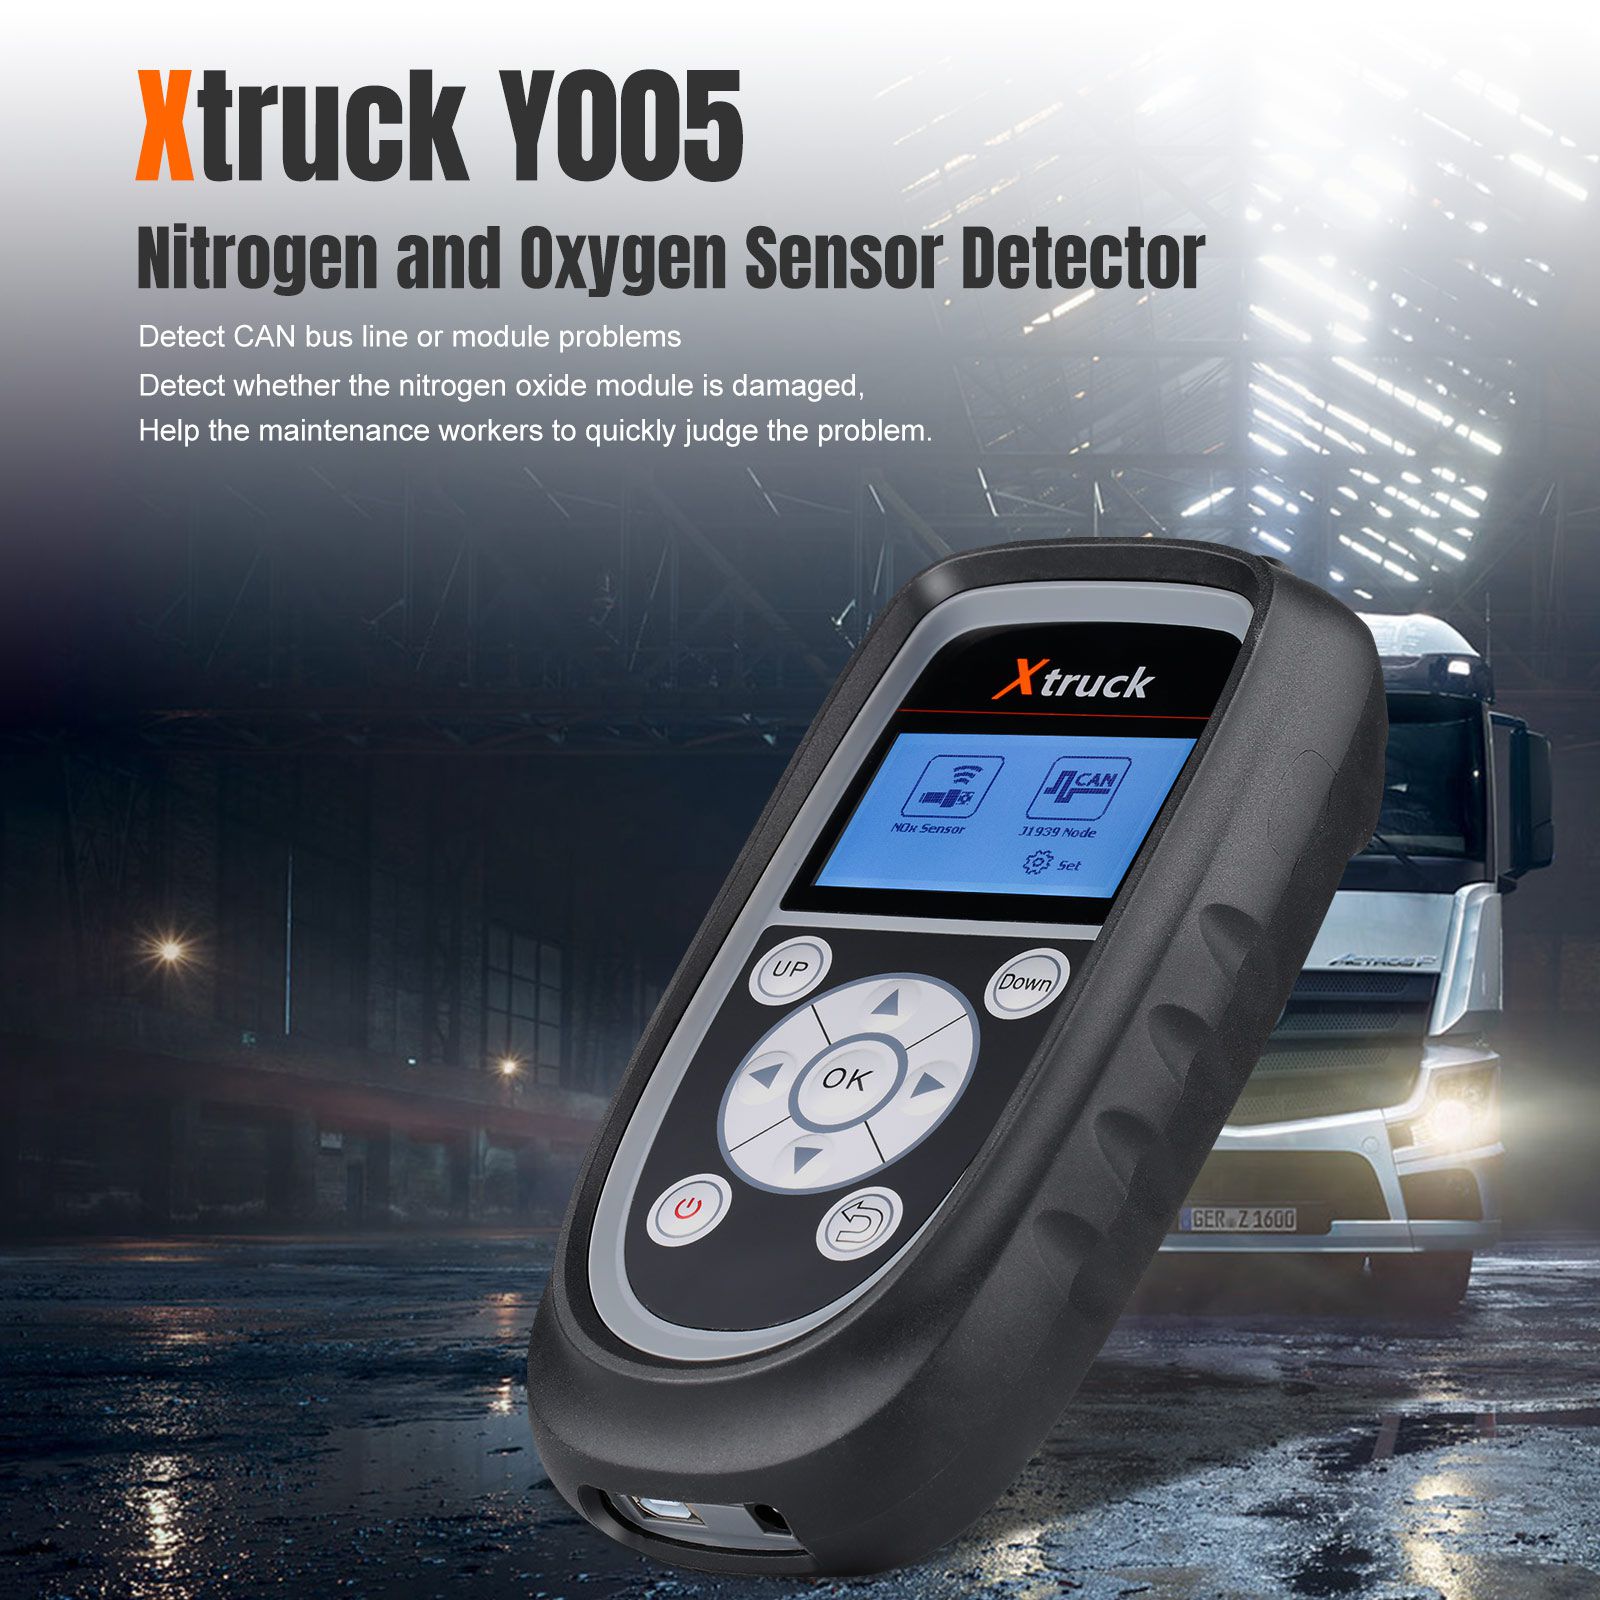 El sensor de nitrógeno y oxígeno xtruck y005 detecta la máquina de señalización del vehículo, el detector de la bomba de urea repara automáticamente la herramienta de diagnóstico de la bomba de urea.